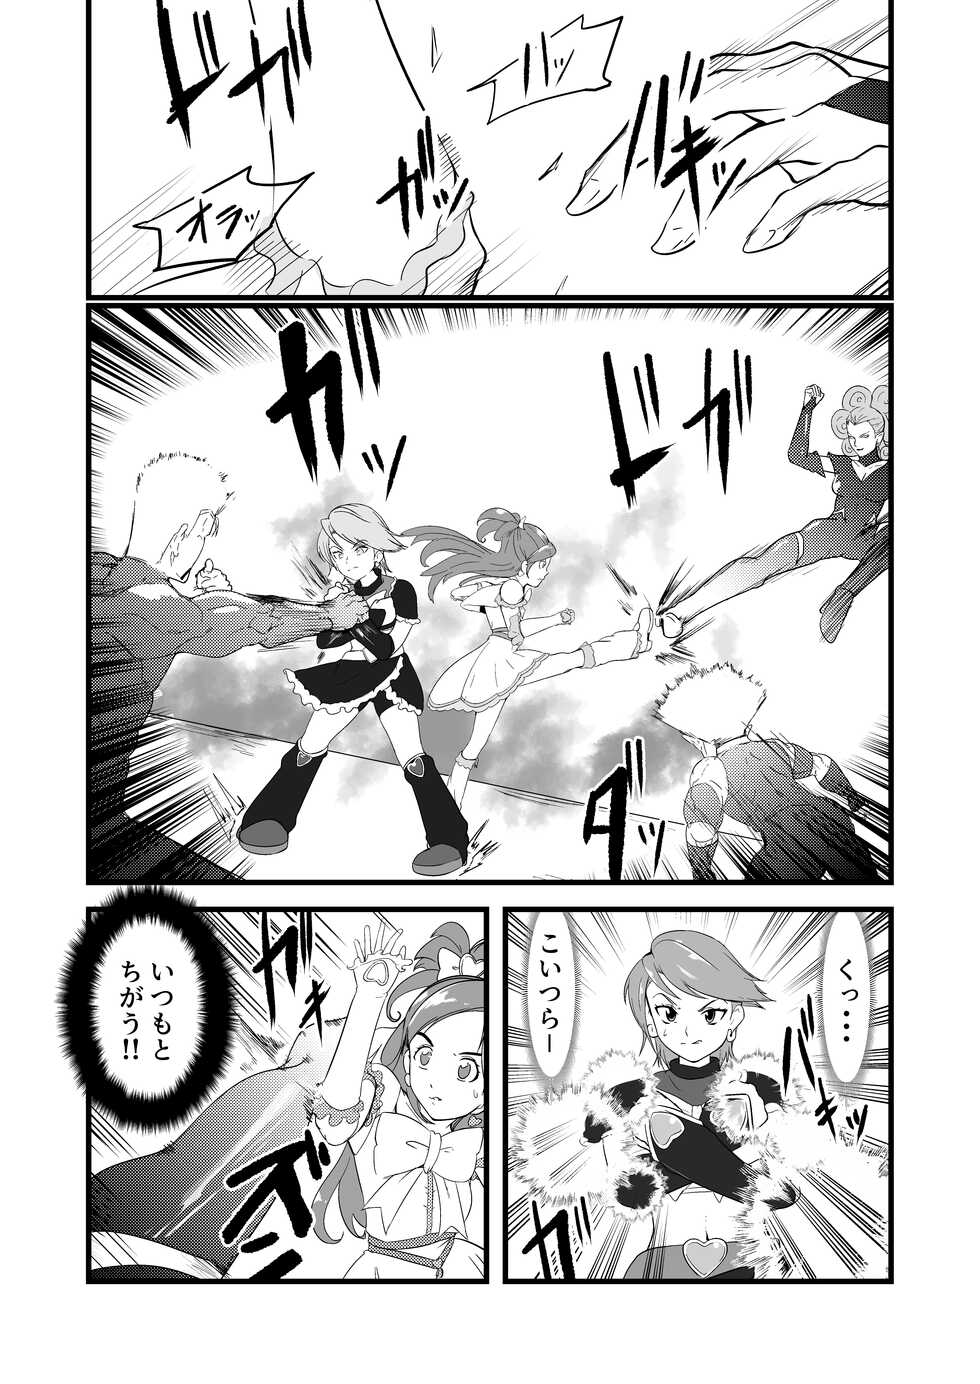 [JabyssK] Belly Crisis 7 (Futari wa Pretty Cure) - Page 1